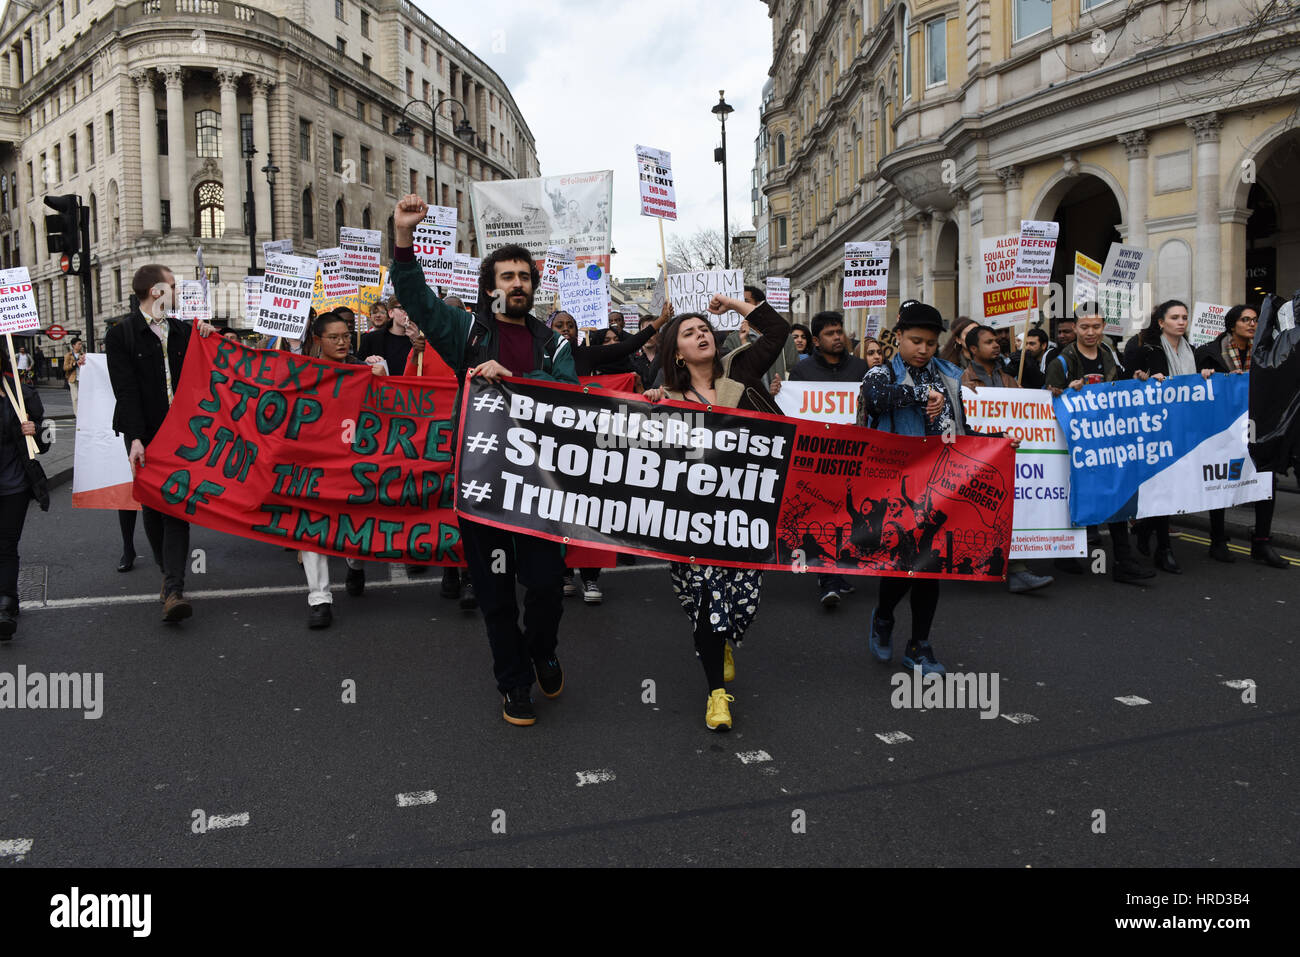 Viele Studenten von verschiedenen Universitäten gingen auf die Straße marschieren Parlament Protest gegen Brexit und Trumps Staatsbesuch in Großbritannien. Stockfoto